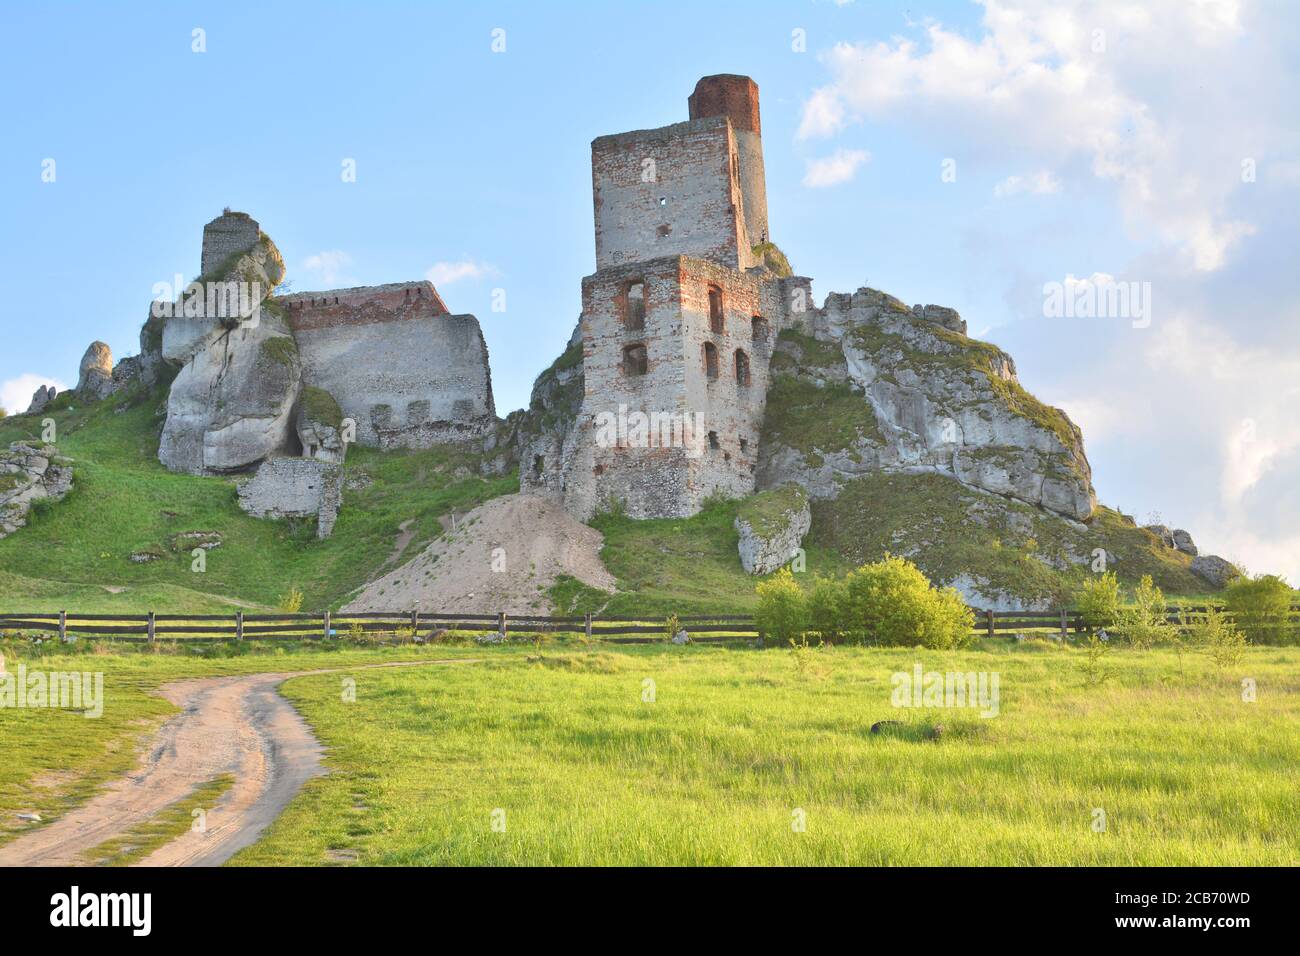 Ruins of the castle in Olsztyn, Jura Krakowsko-Czestochowska in Poland. Stock Photo